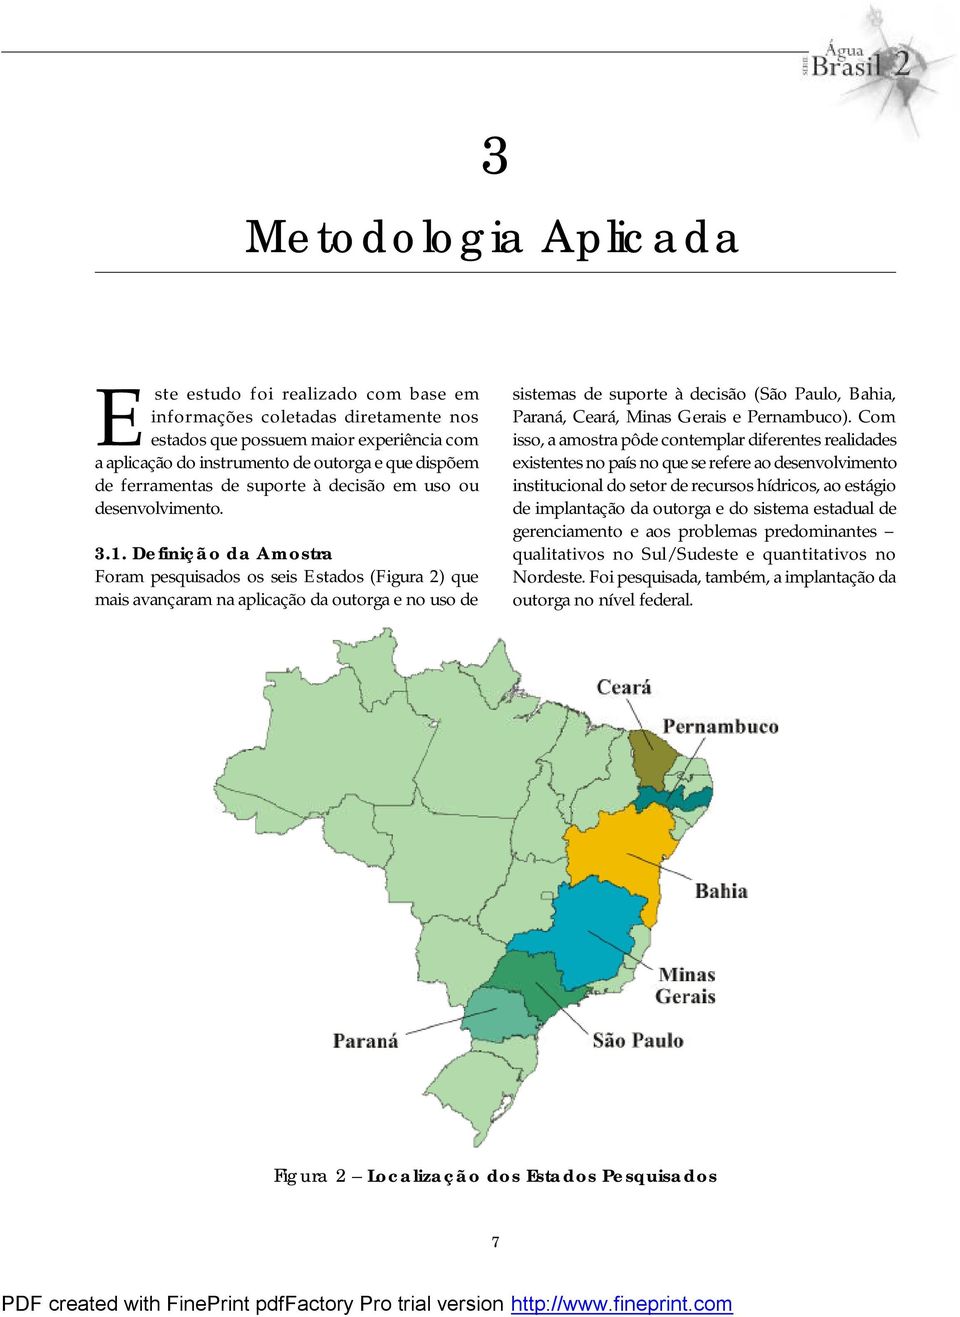 Definição da Amostra Foram pesquisados os seis Estados (Figura 2) que mais avançaram na aplicação da outorga e no uso de sistemas de suporte à decisão (São Paulo, Bahia, Paraná, Ceará, Minas Gerais e